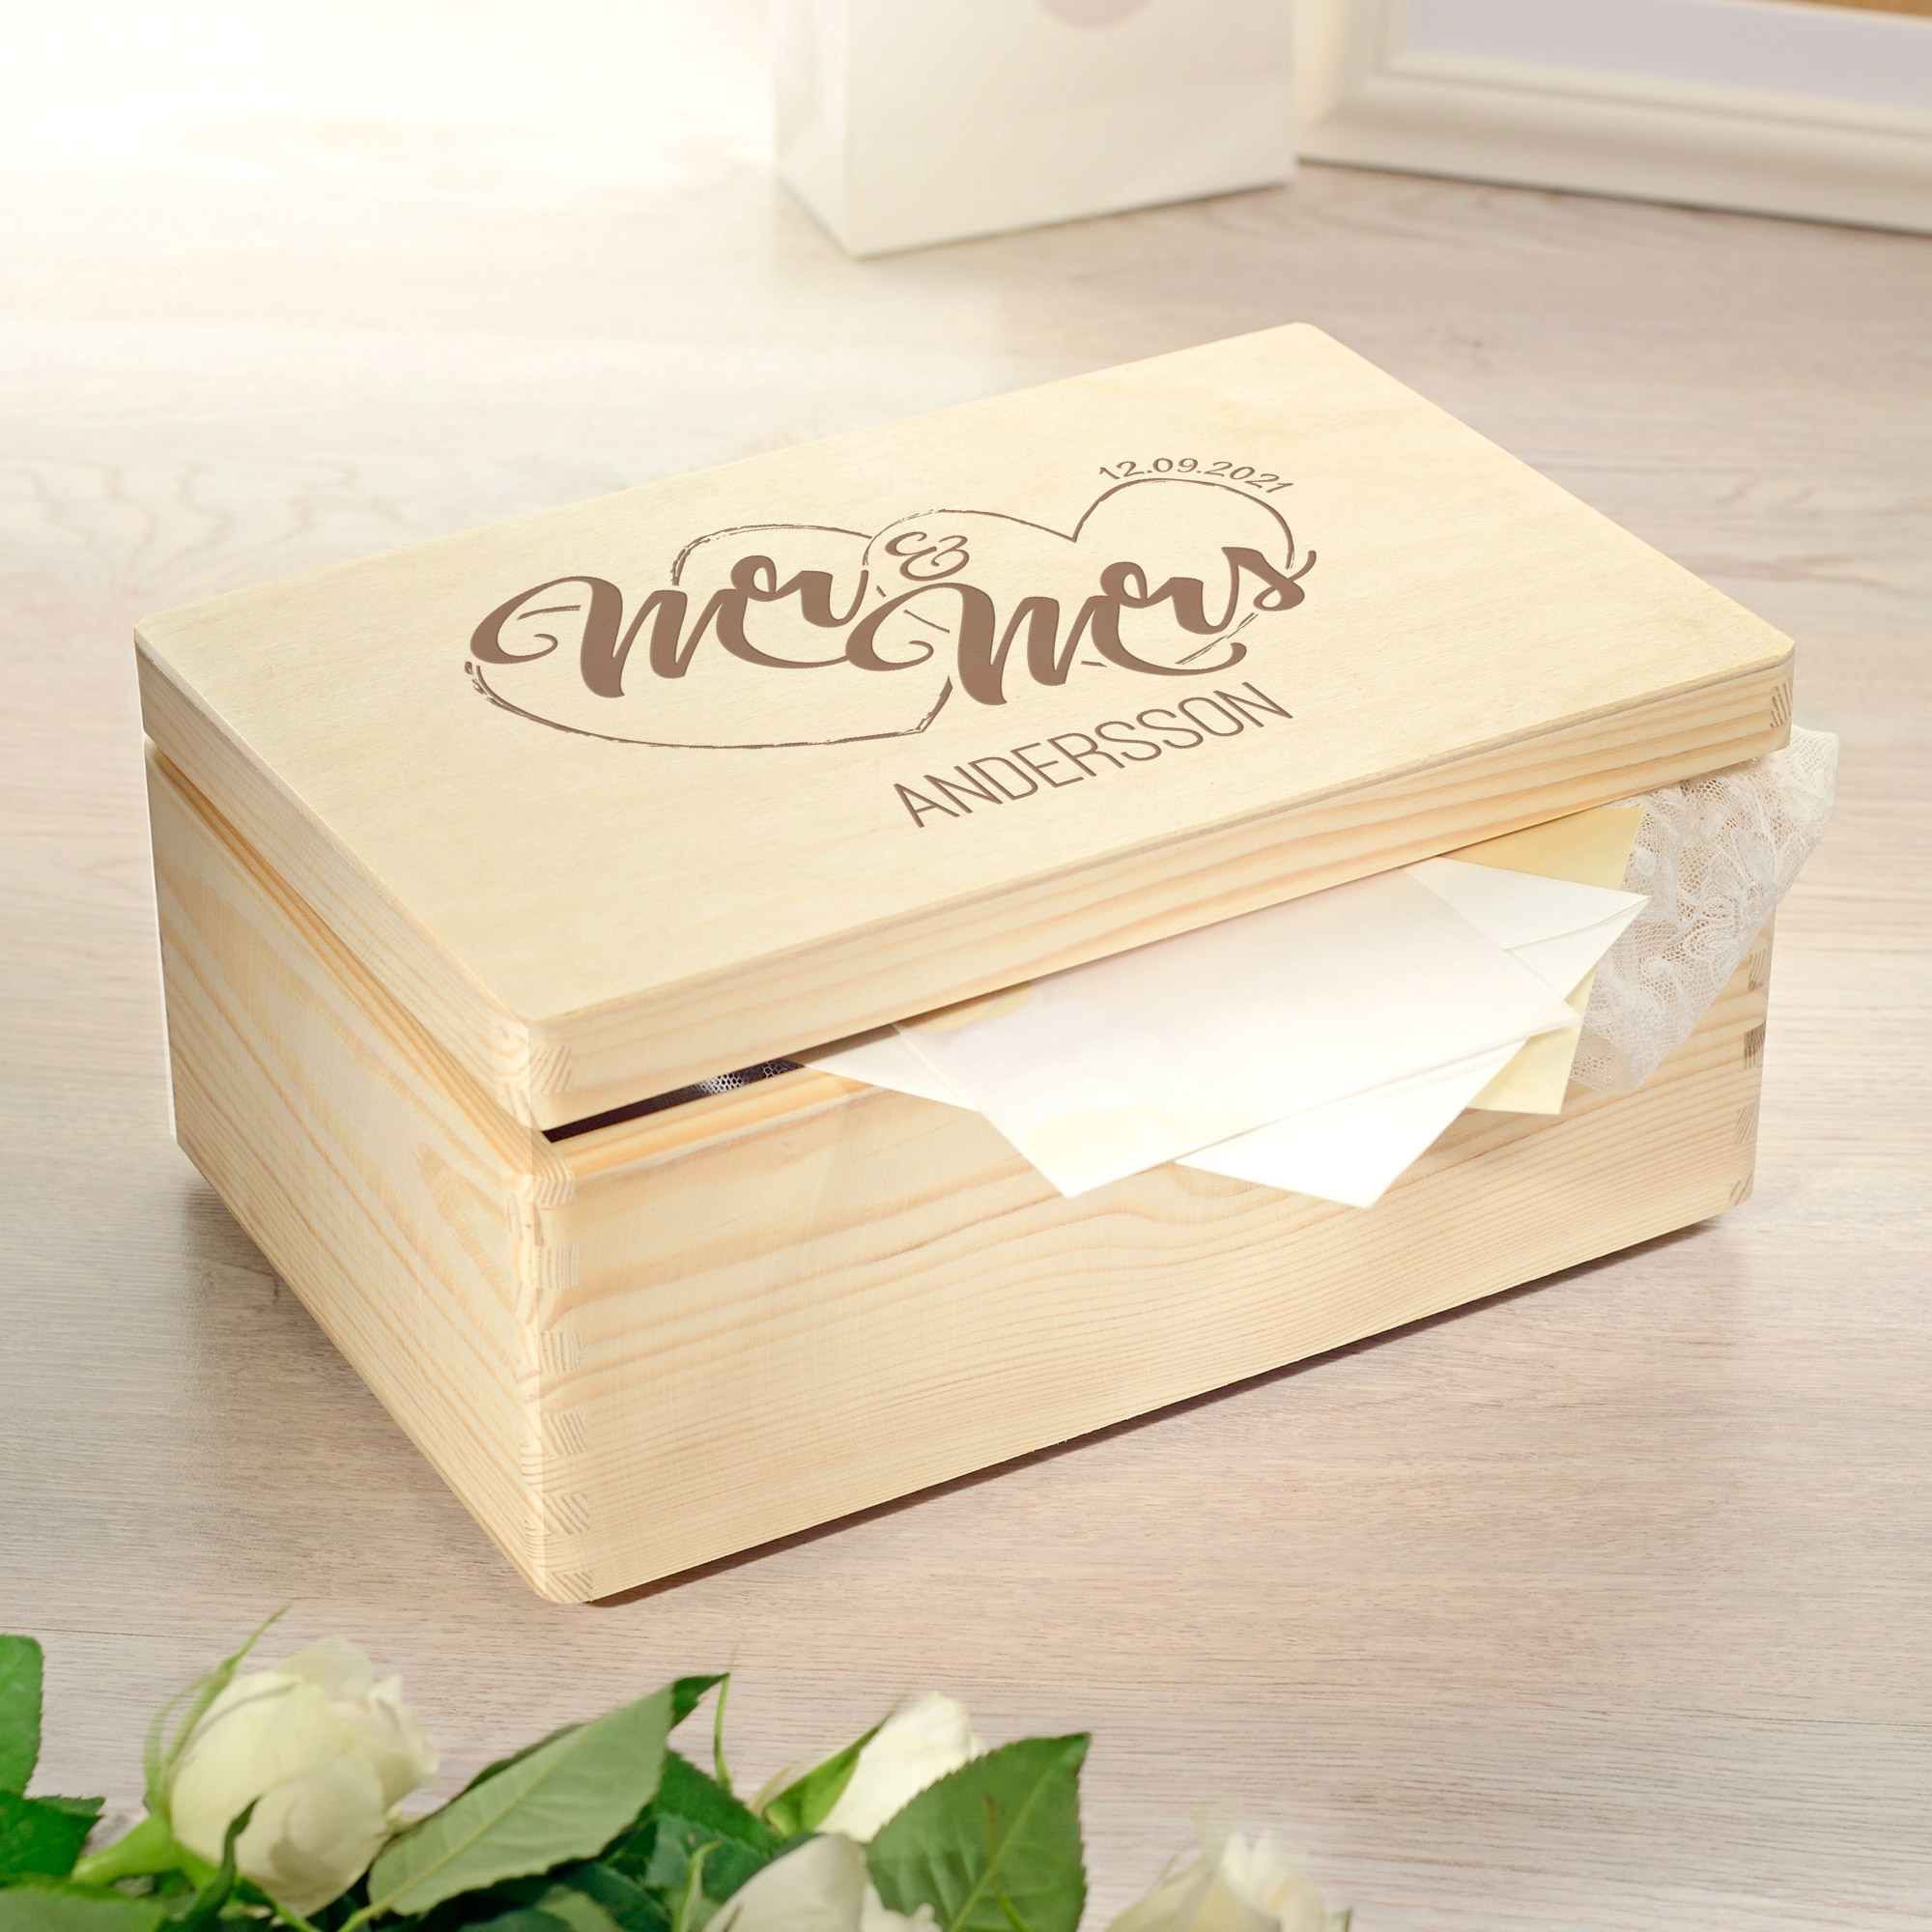 Erinnerungsbox zur Hochzeit - Mr & Mrs - graviert